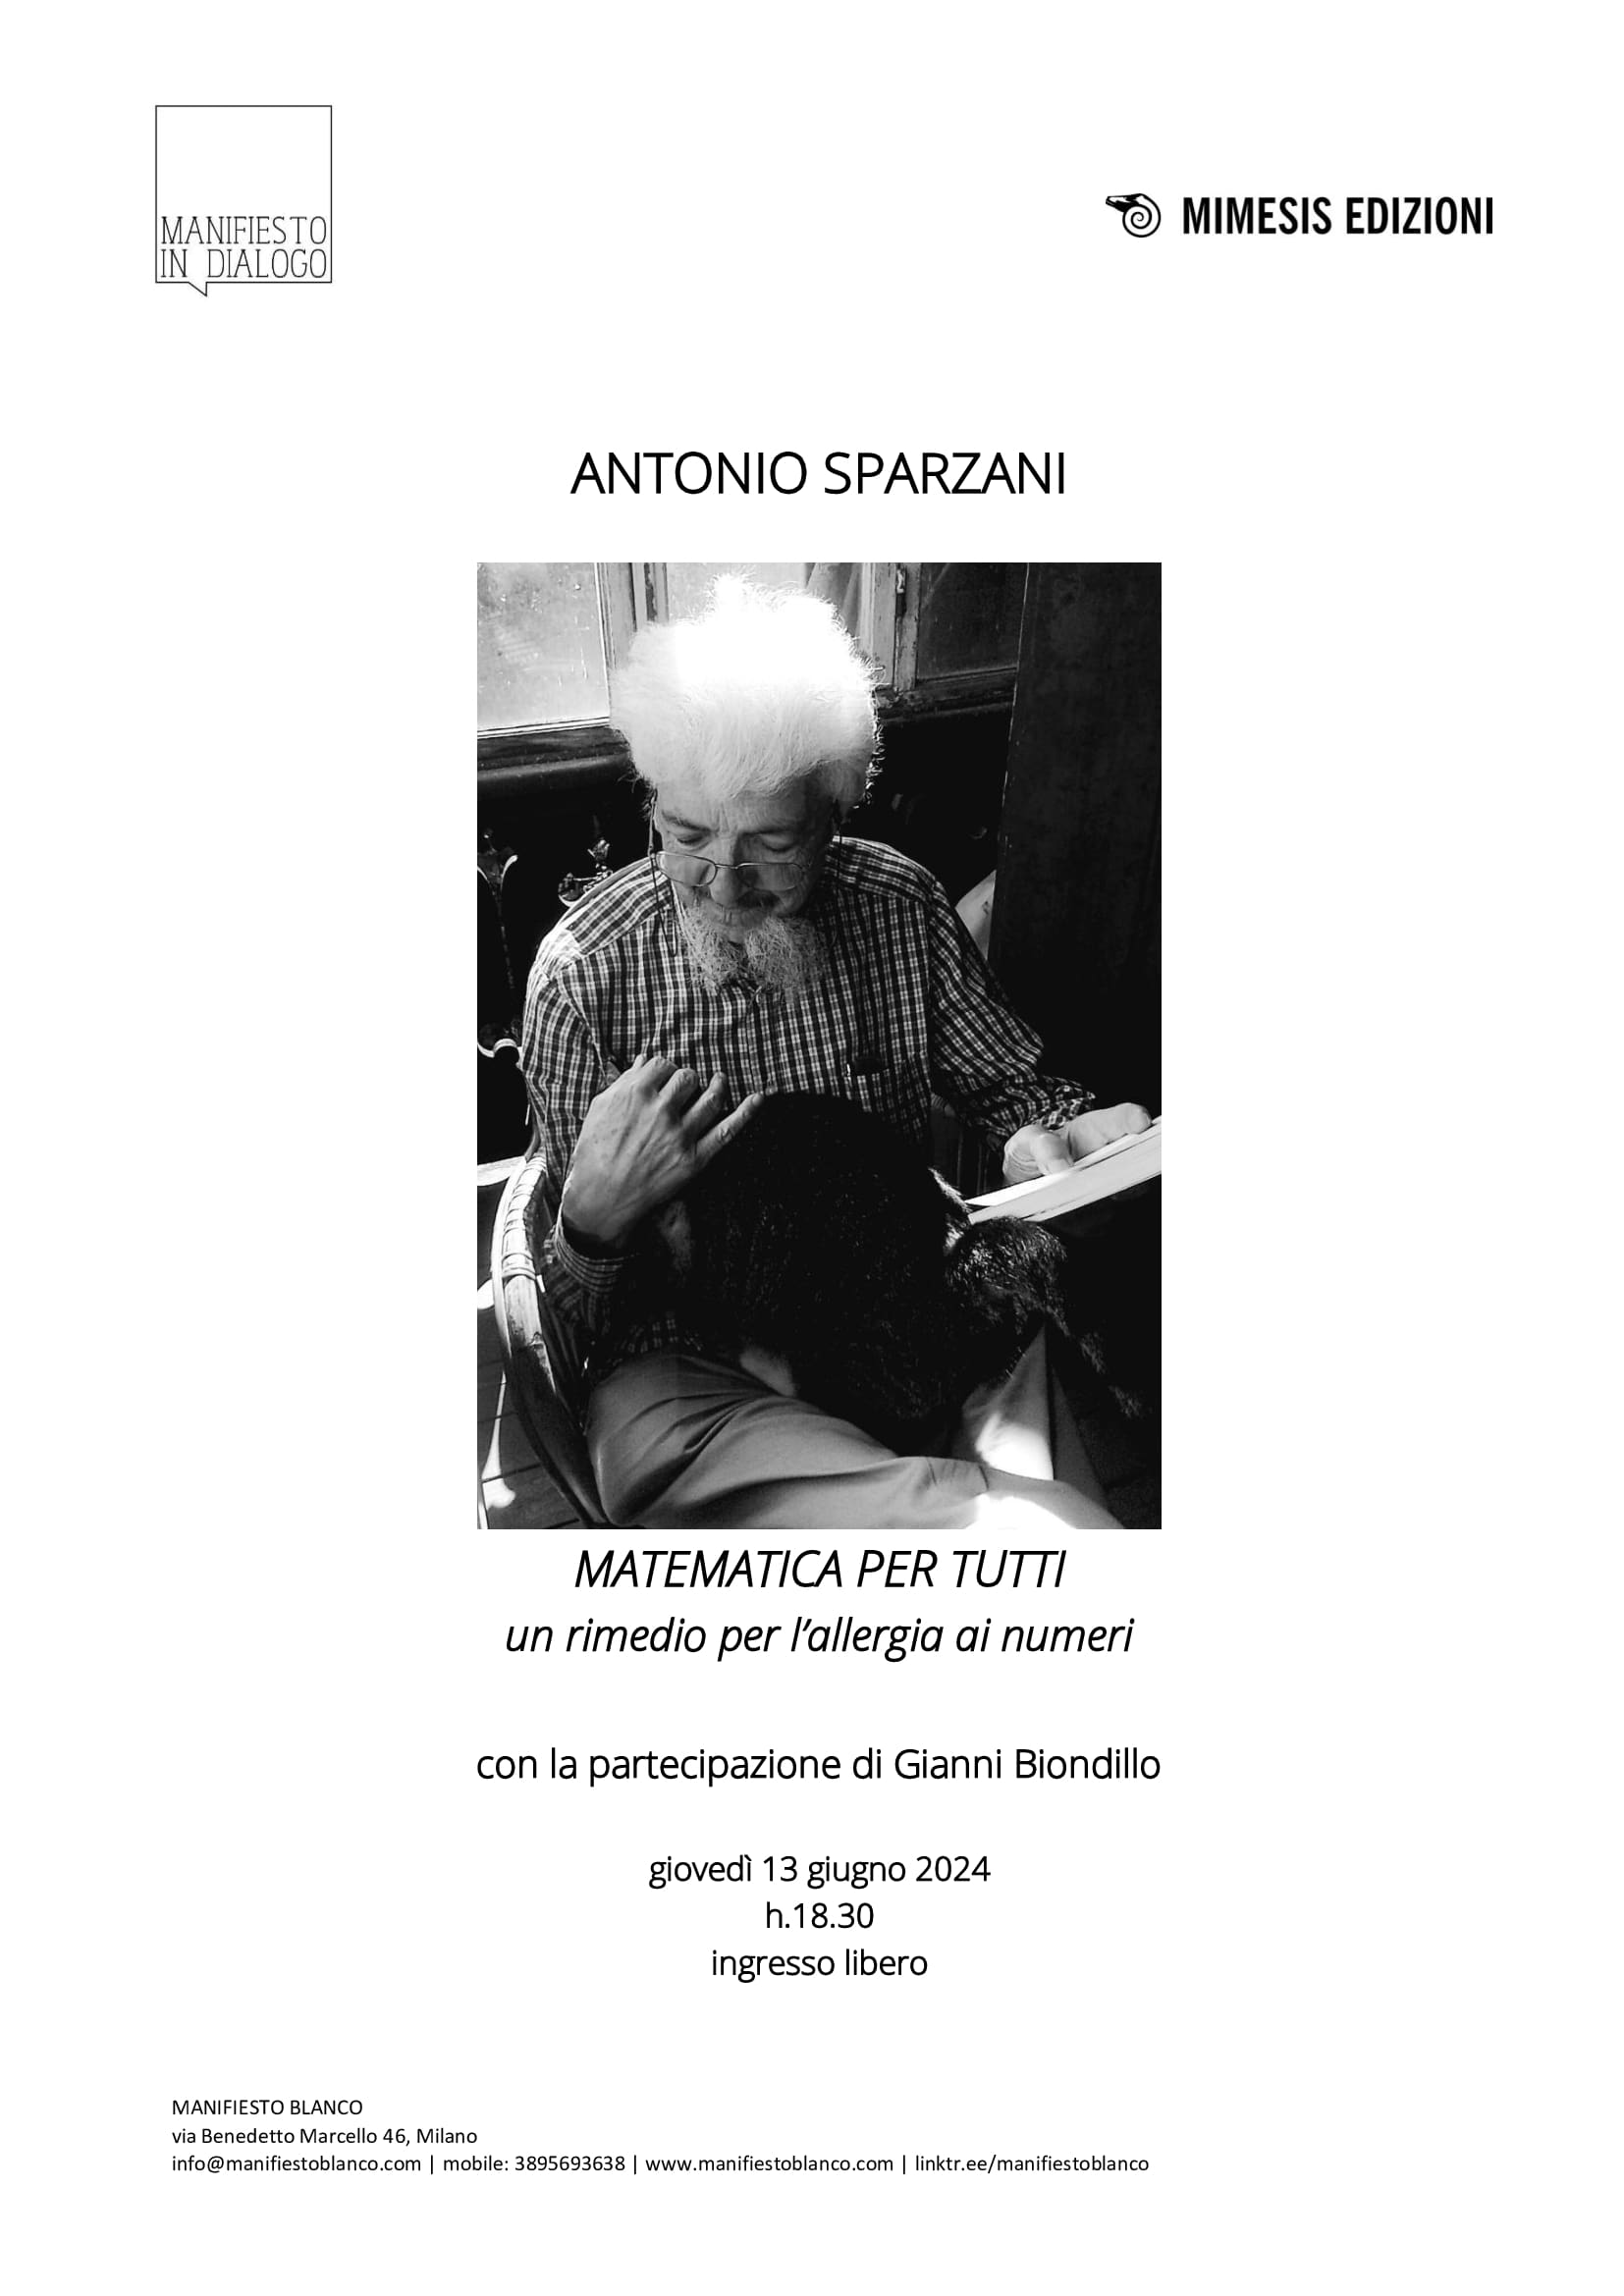 Matematica per tutti, il libro di Antonio Sparzani e Gianni Biondillo, per scoprire la bellezza dei numeri e superare le difficoltà